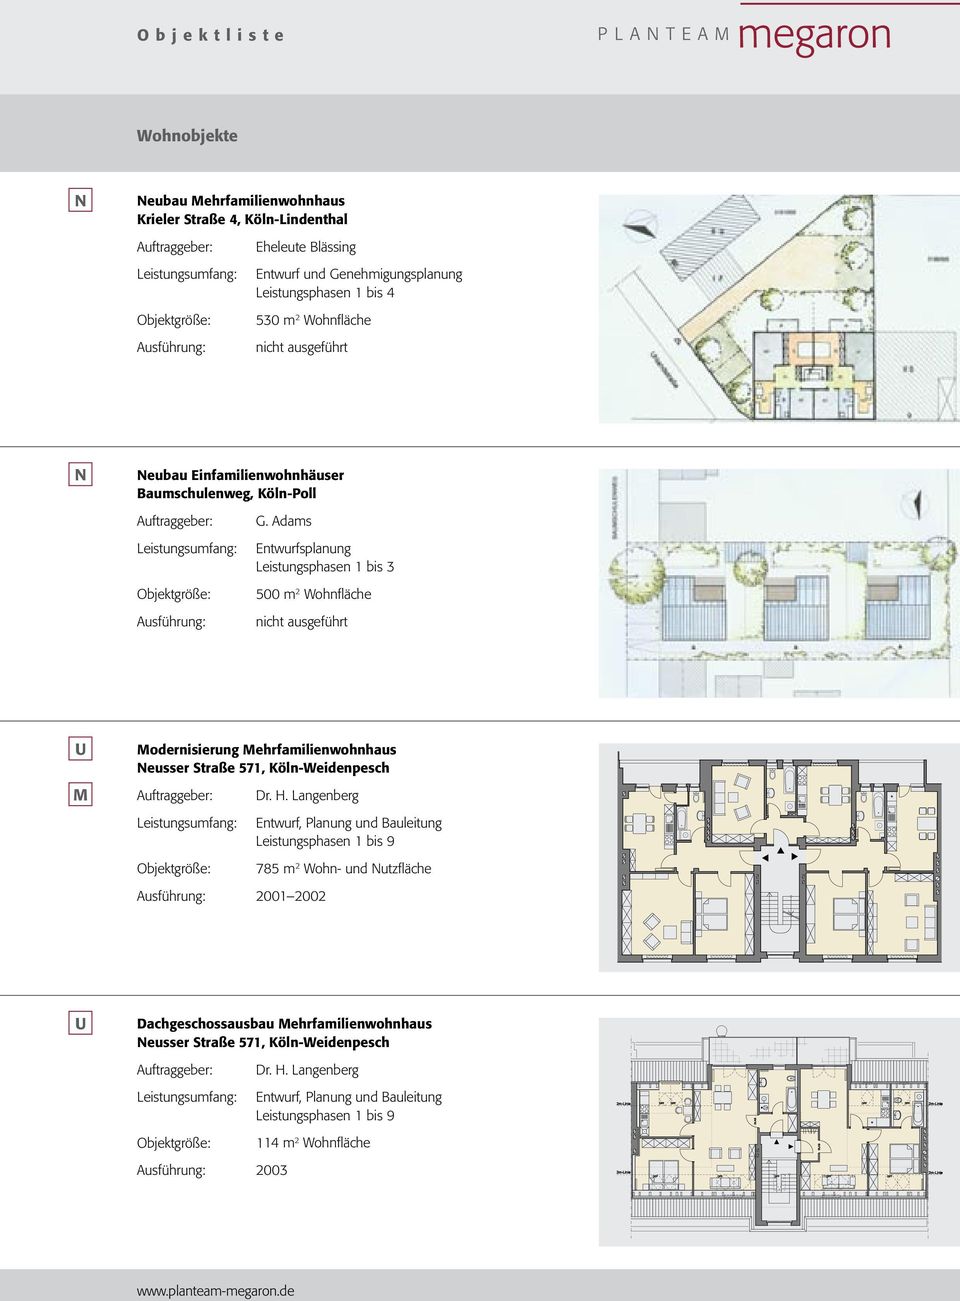 Adams Entwurfsplanung Leistungsphasen 1 bis 3 500 m 2 Wohnfläche nicht ausgeführt odernisierung ehrfamilienwohnhaus eusser traße 571, Köln-Weidenpesch